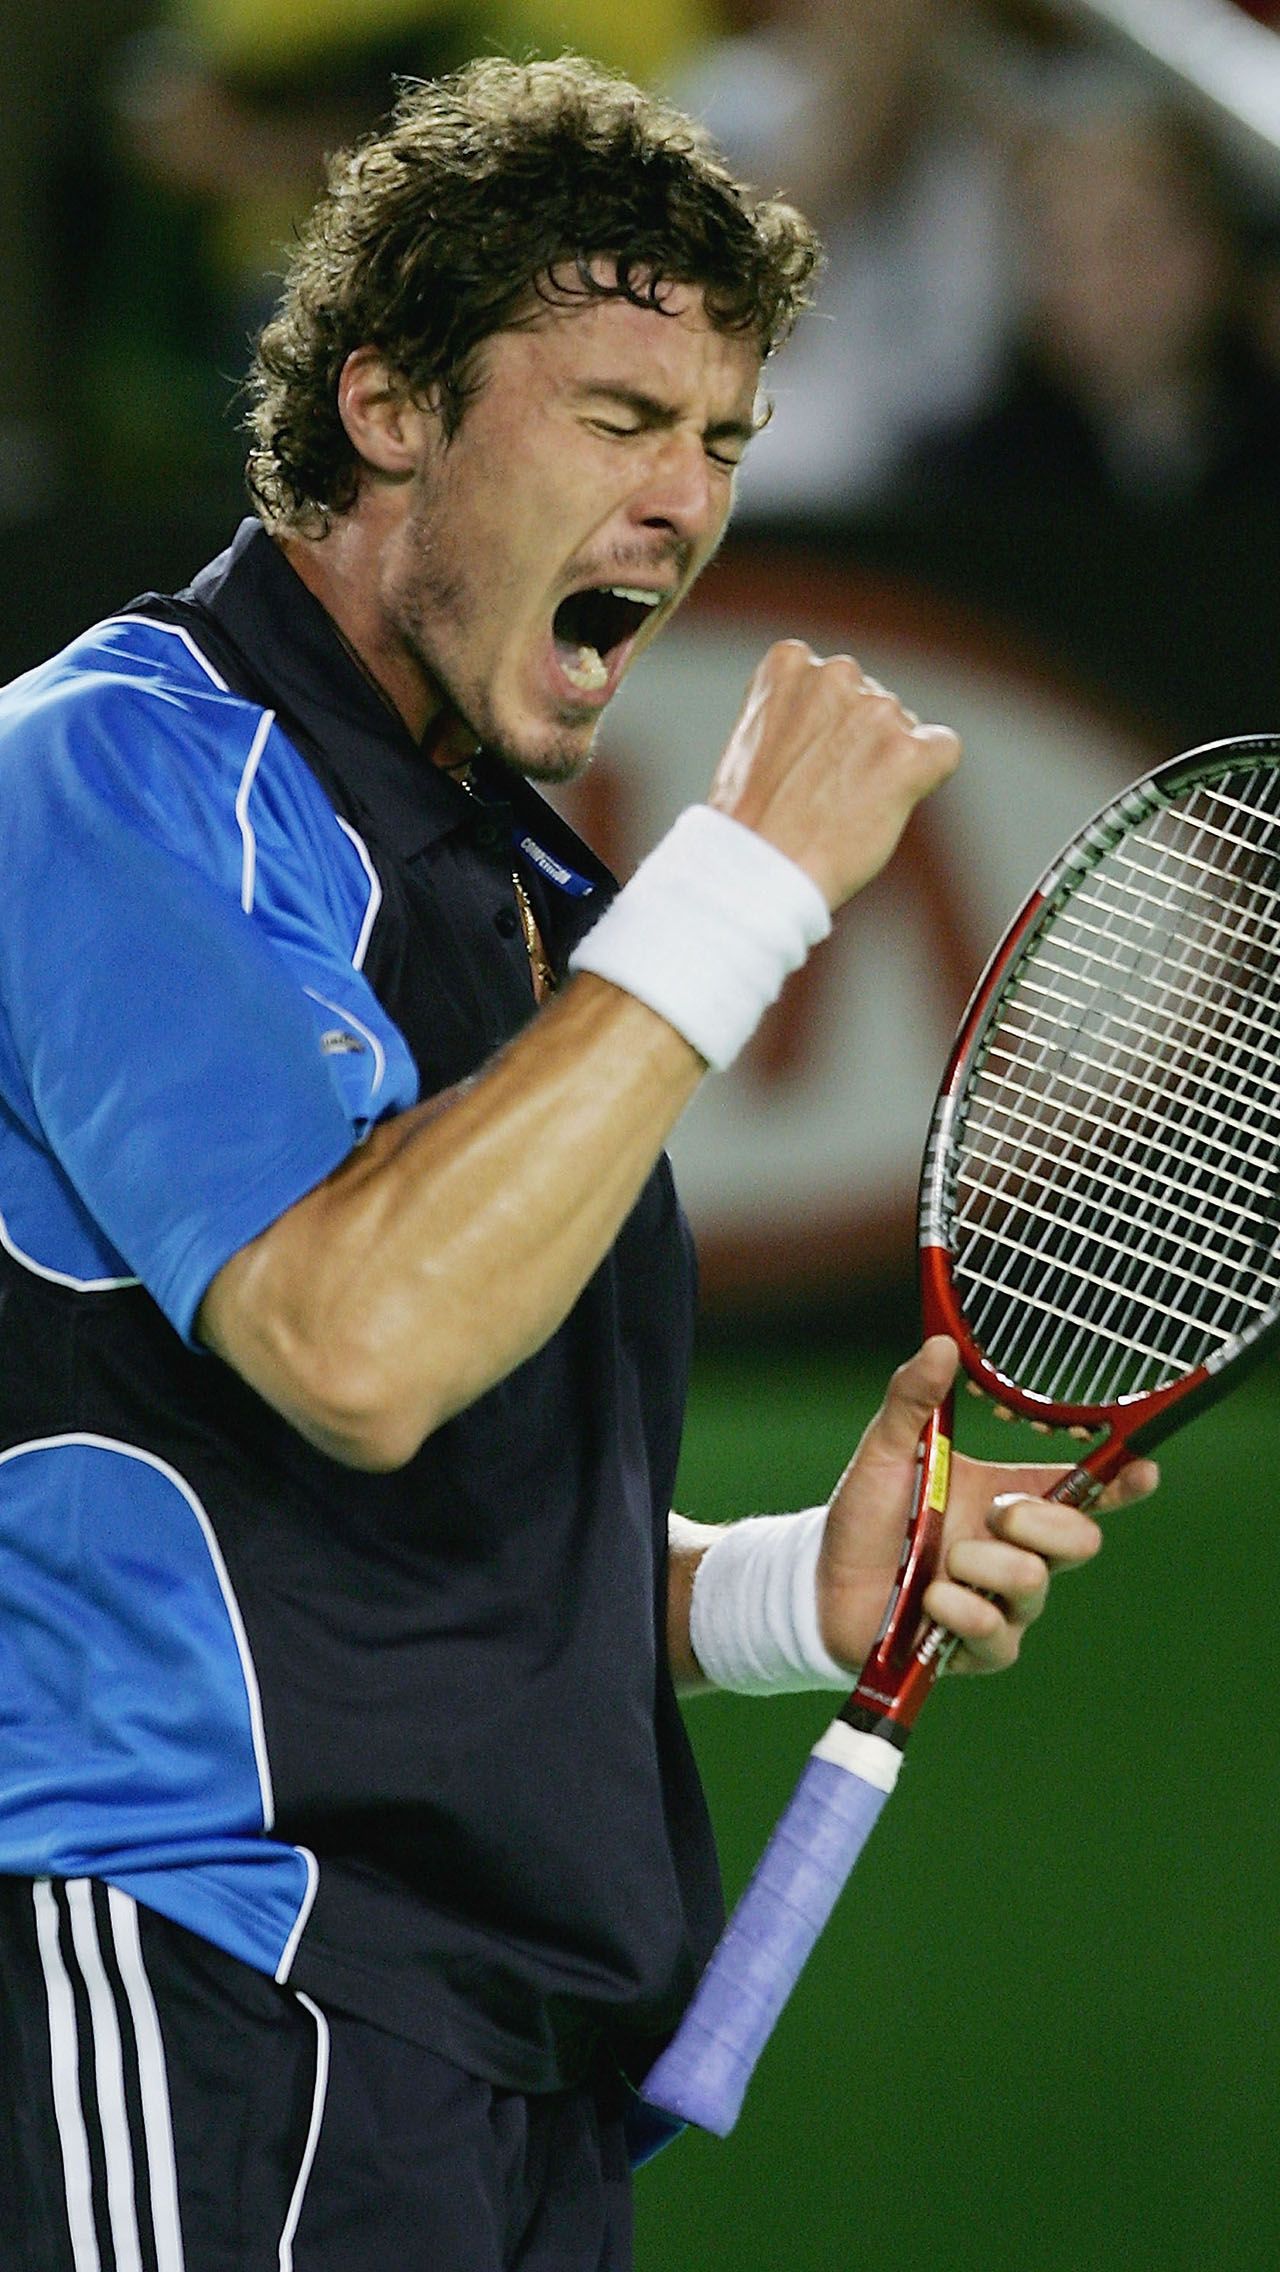 Марат Сафин – о победе на Australian Open – 2005: «Ощутил огромное облегчение, когда выиграл свой 2-й «Шлем». Думал, что так и останусь парнем, который по ошибке взял ТБШ и больше ничего не достиг».